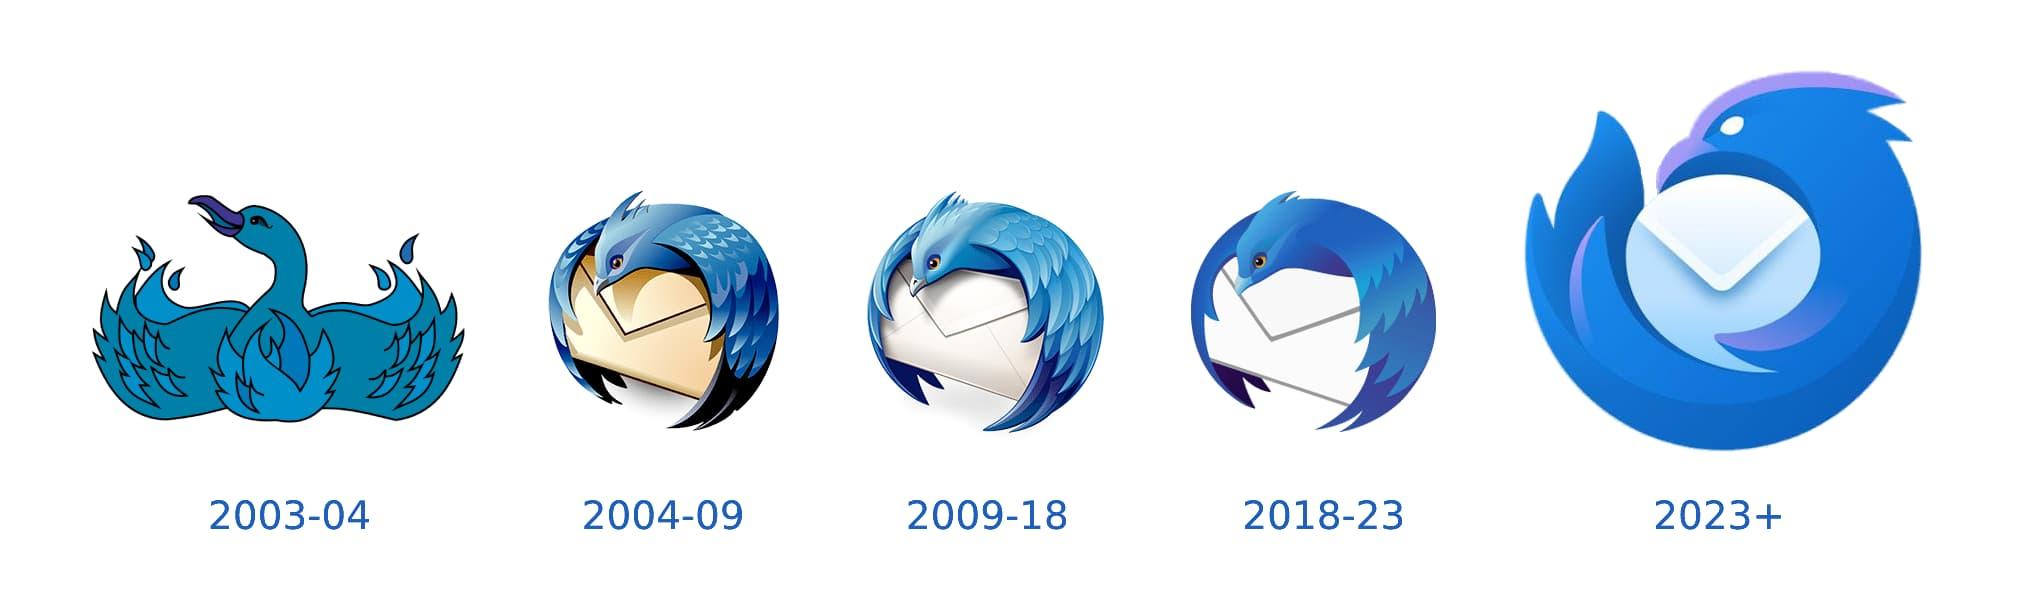 thunderbird logos from 2003 to 2023